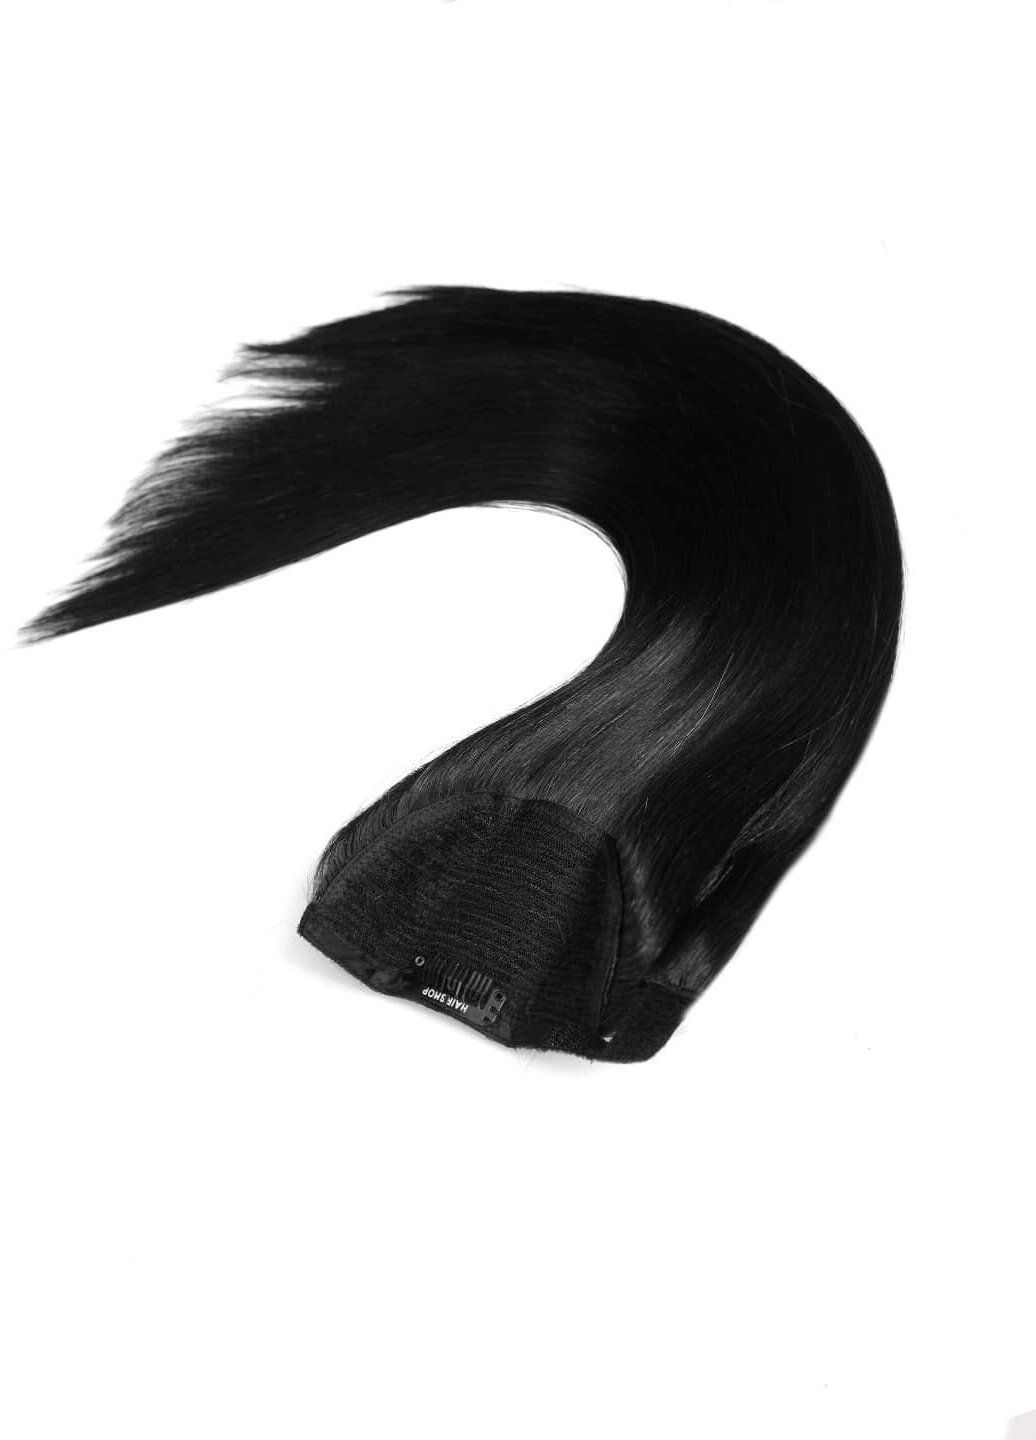 Hairshop Хвост на липучке 1.0 (1) прямой 50 см (100 гр) (Черный)